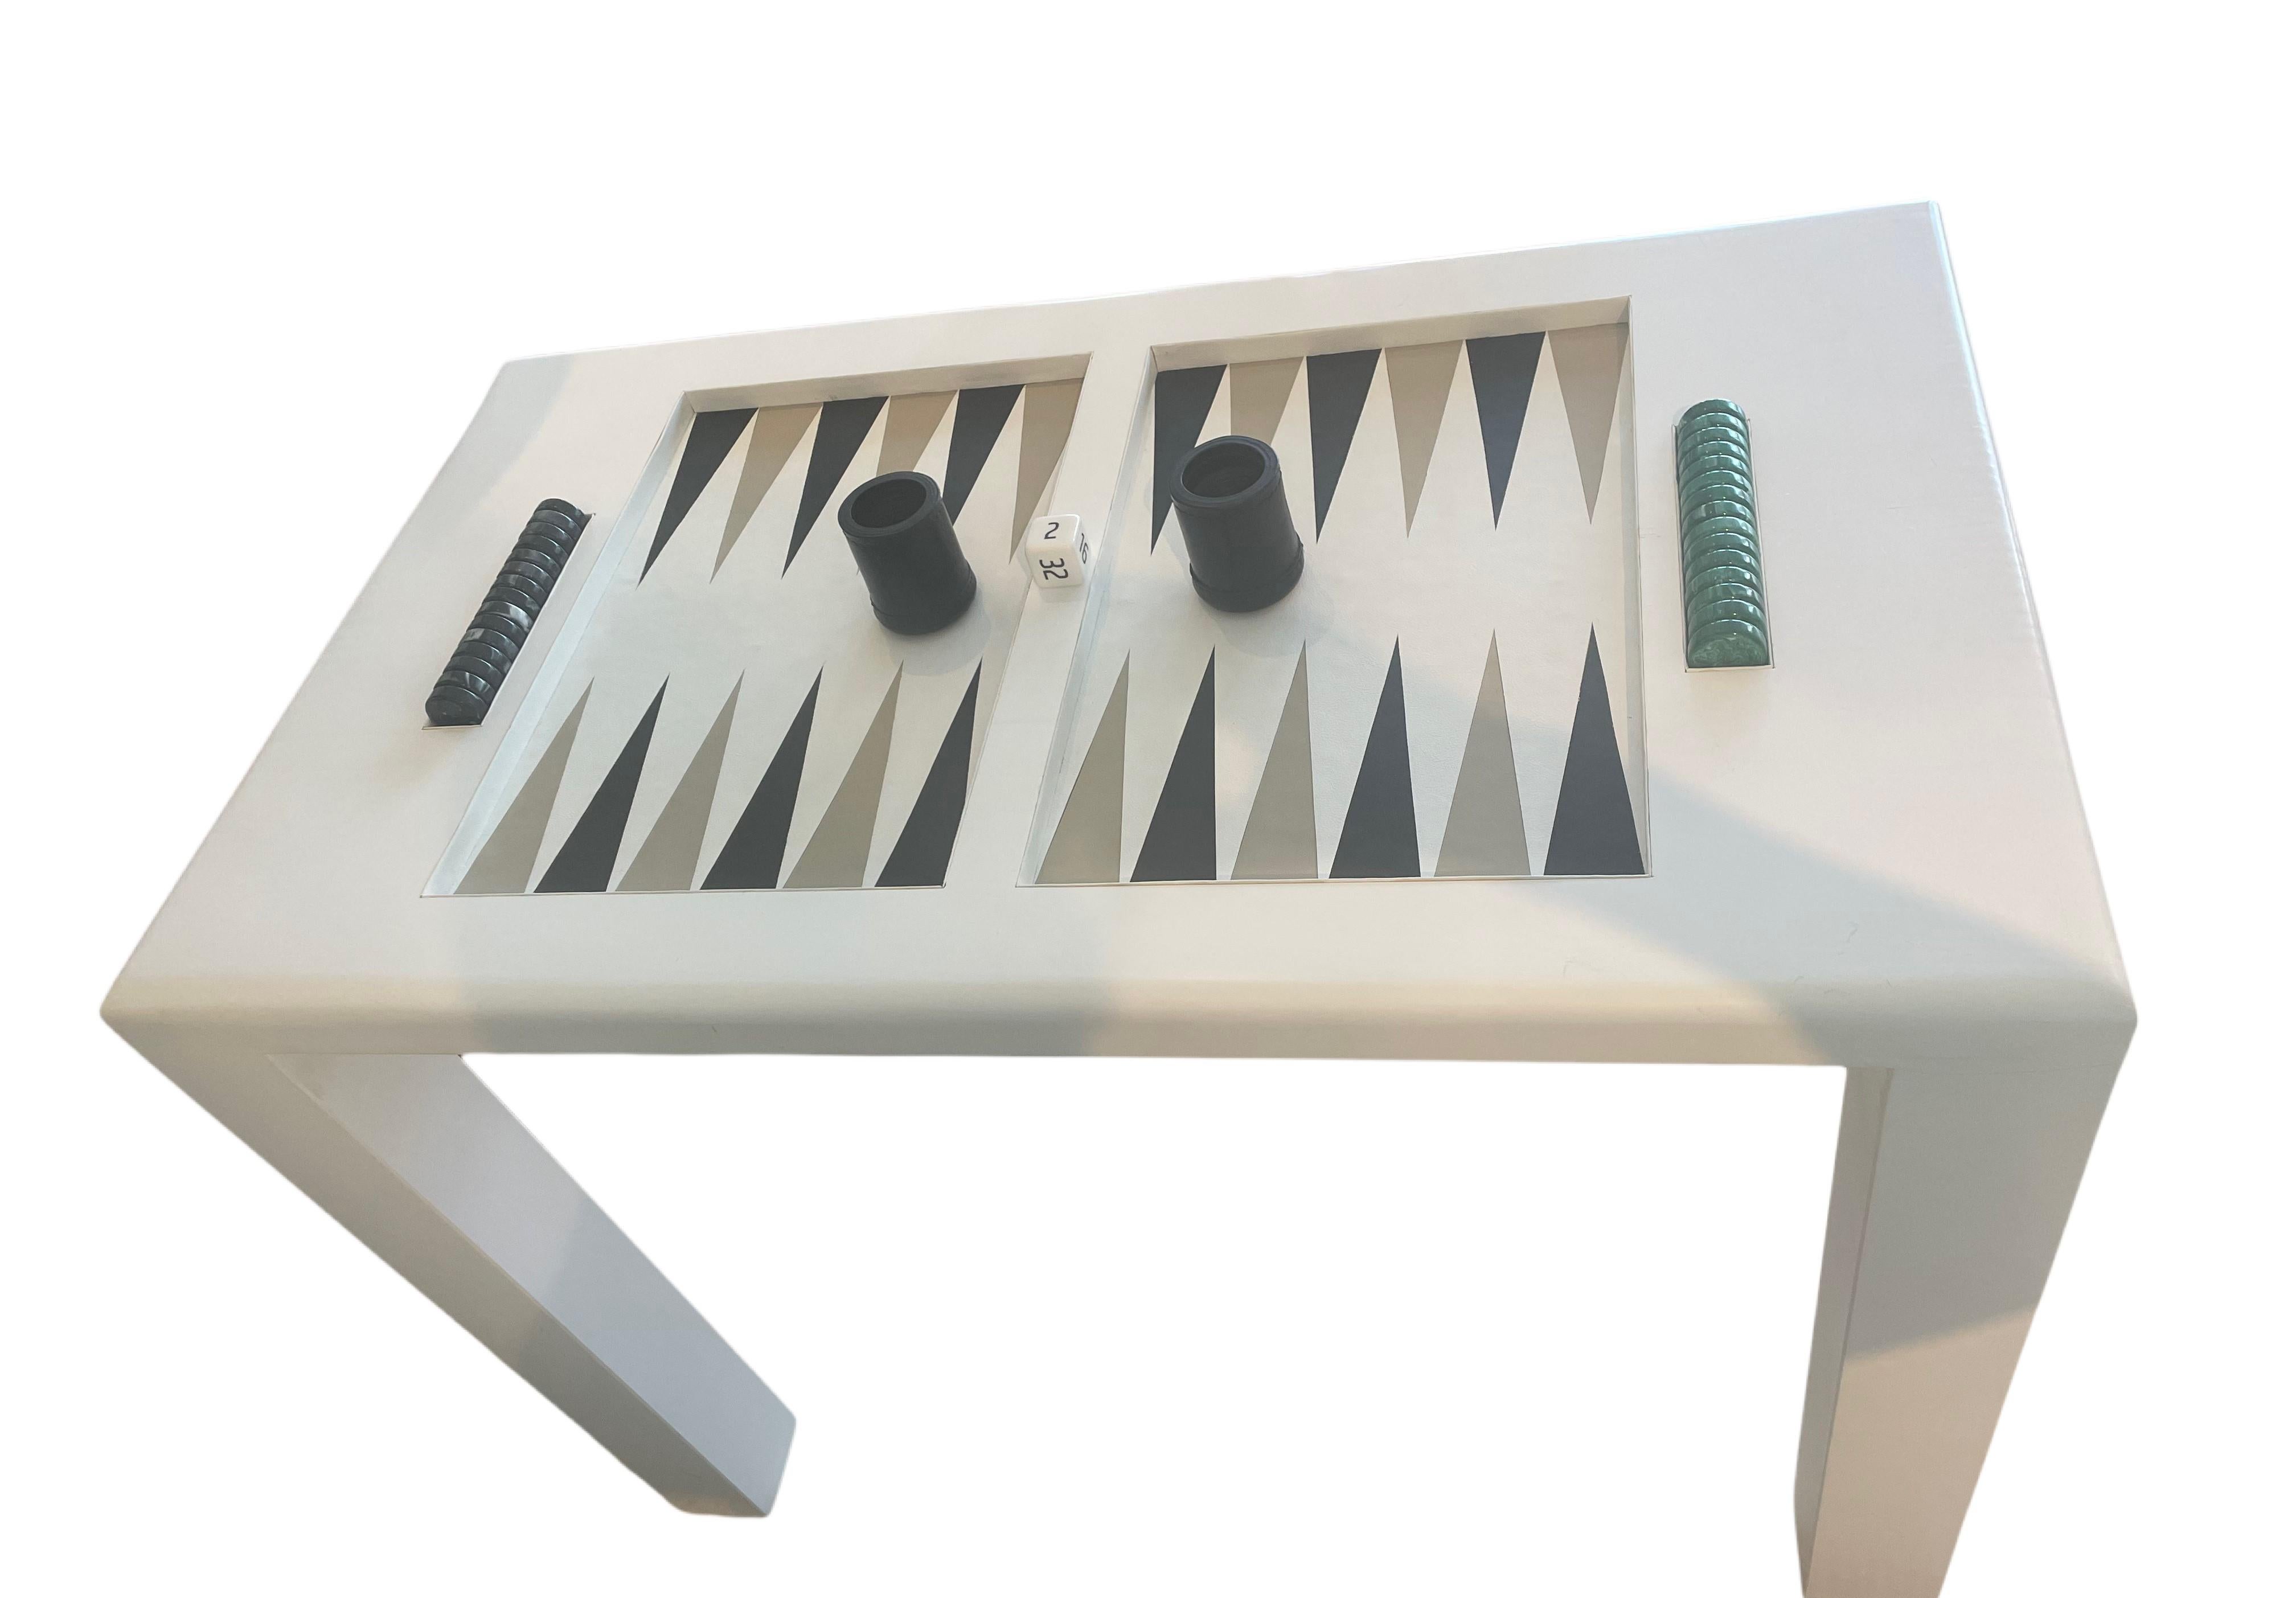 Dieser Backgammon-Tisch aus lackiertem Holz ist erhältlich UND ein Beispiel für einen Tisch, der in jeder Größe und Farbkombination hergestellt werden kann. Diese mit viel Liebe zum Detail handgefertigten Backgammon-Tische werten jeden Raum auf und